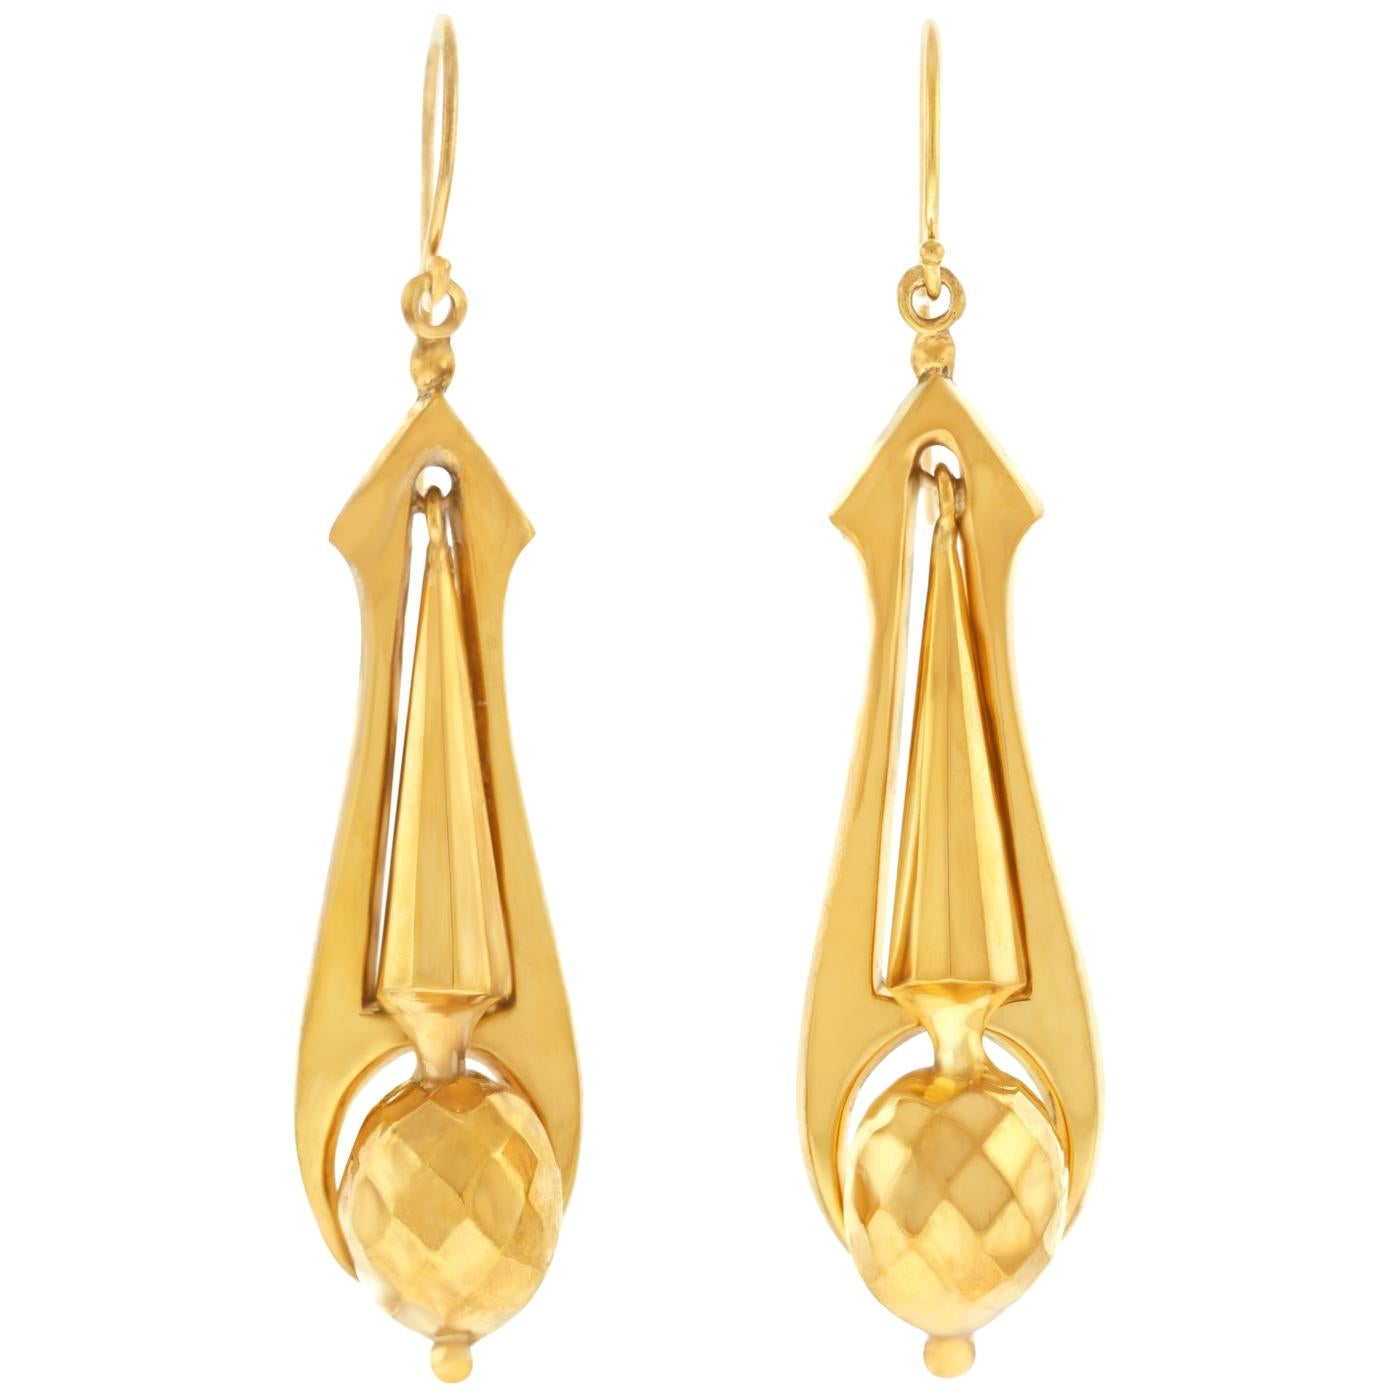 Antique Gold Chandelier Earrings